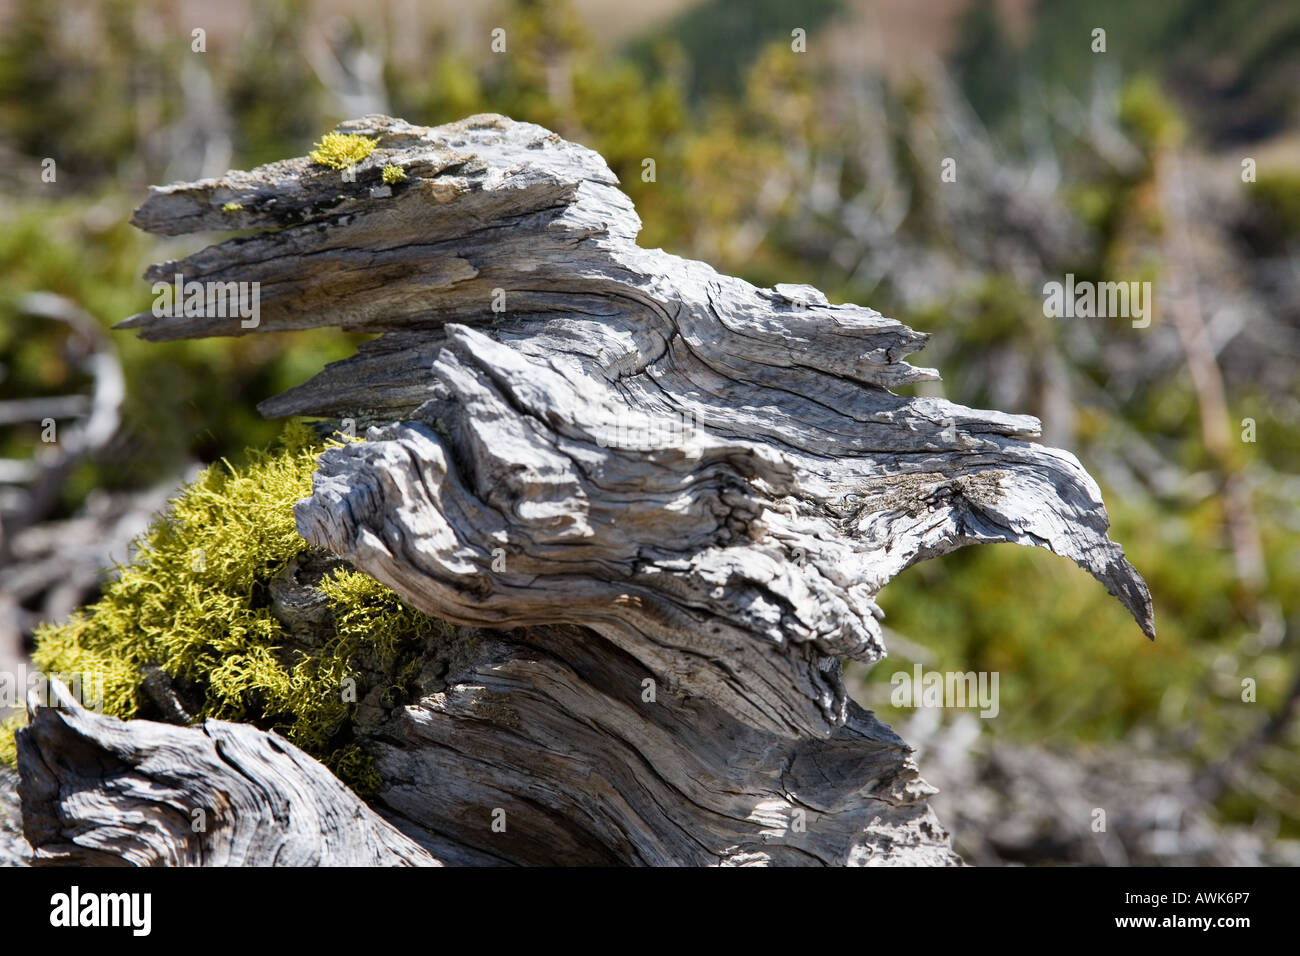 Les arbres morts squelettiques ressemblent à des créatures étranges sur Table Mountain, Alberta, Canada Banque D'Images